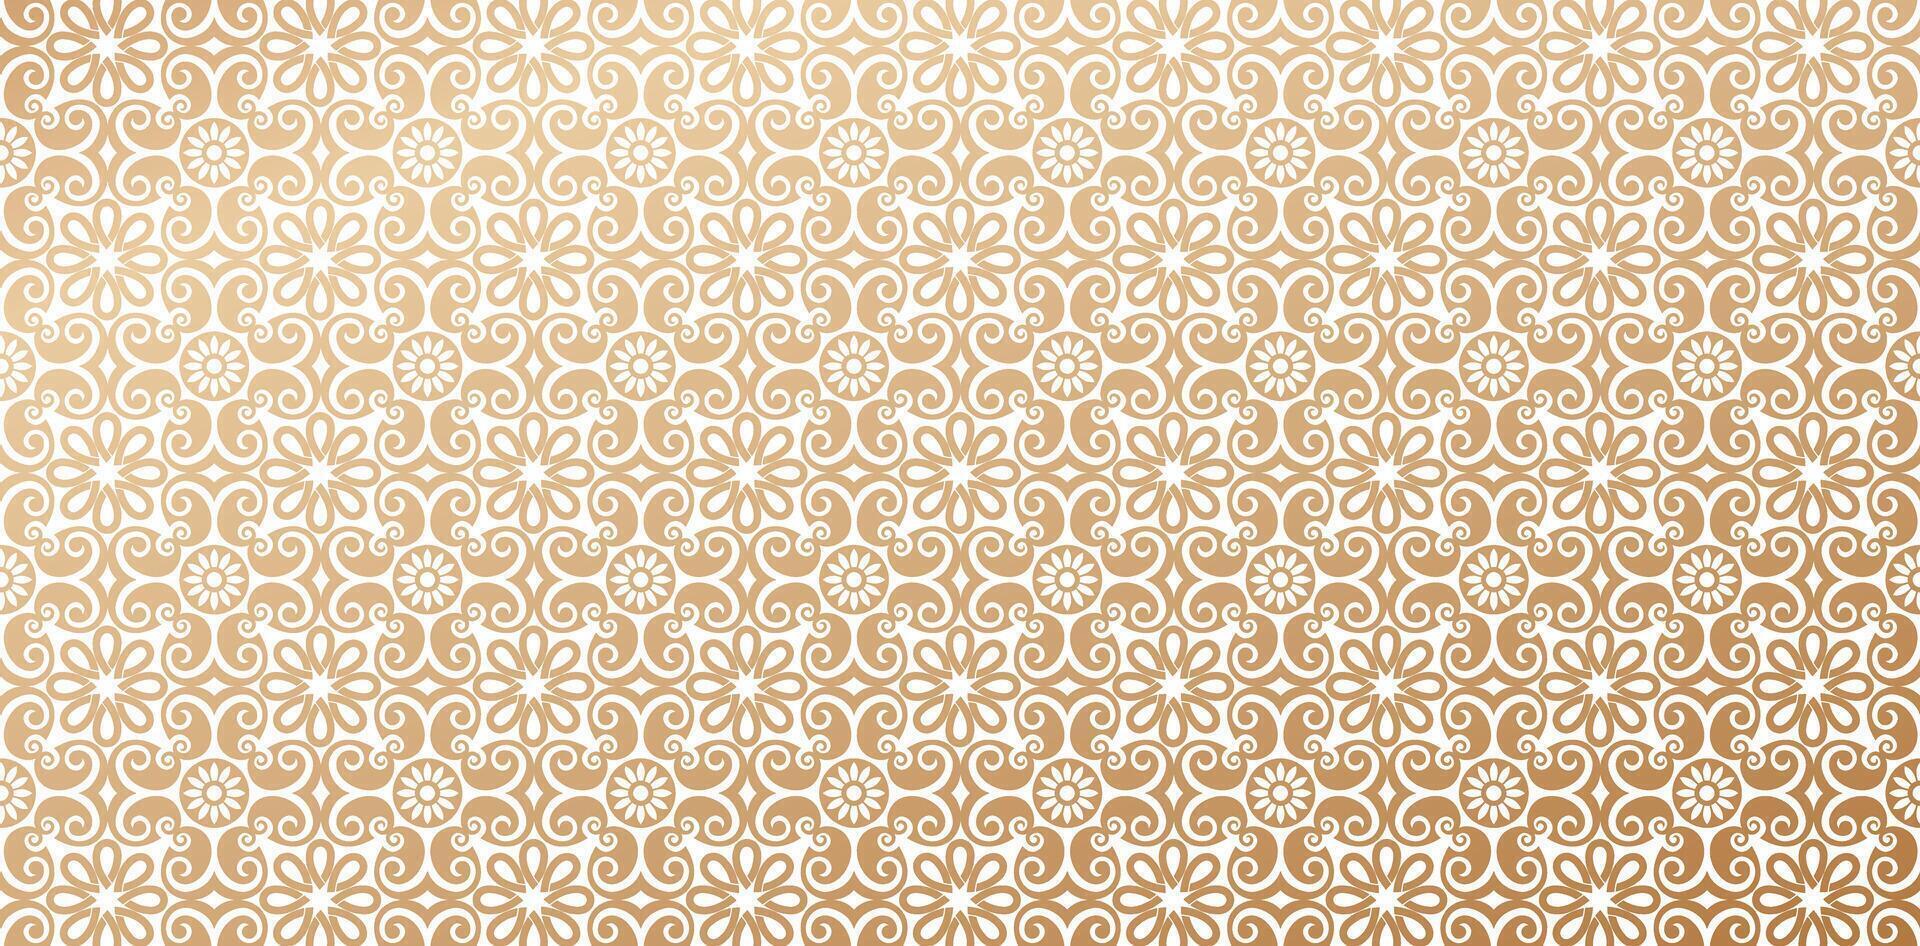 Muster islamisch Stile Ornament Gold Farben Damast Hintergrund Jahrgang Hintergrund zum modisch modern Hintergrund oder Textilien, Bücher Abdeckung, Digital Schnittstellen, drucken Designs Vorlage Materialien vektor